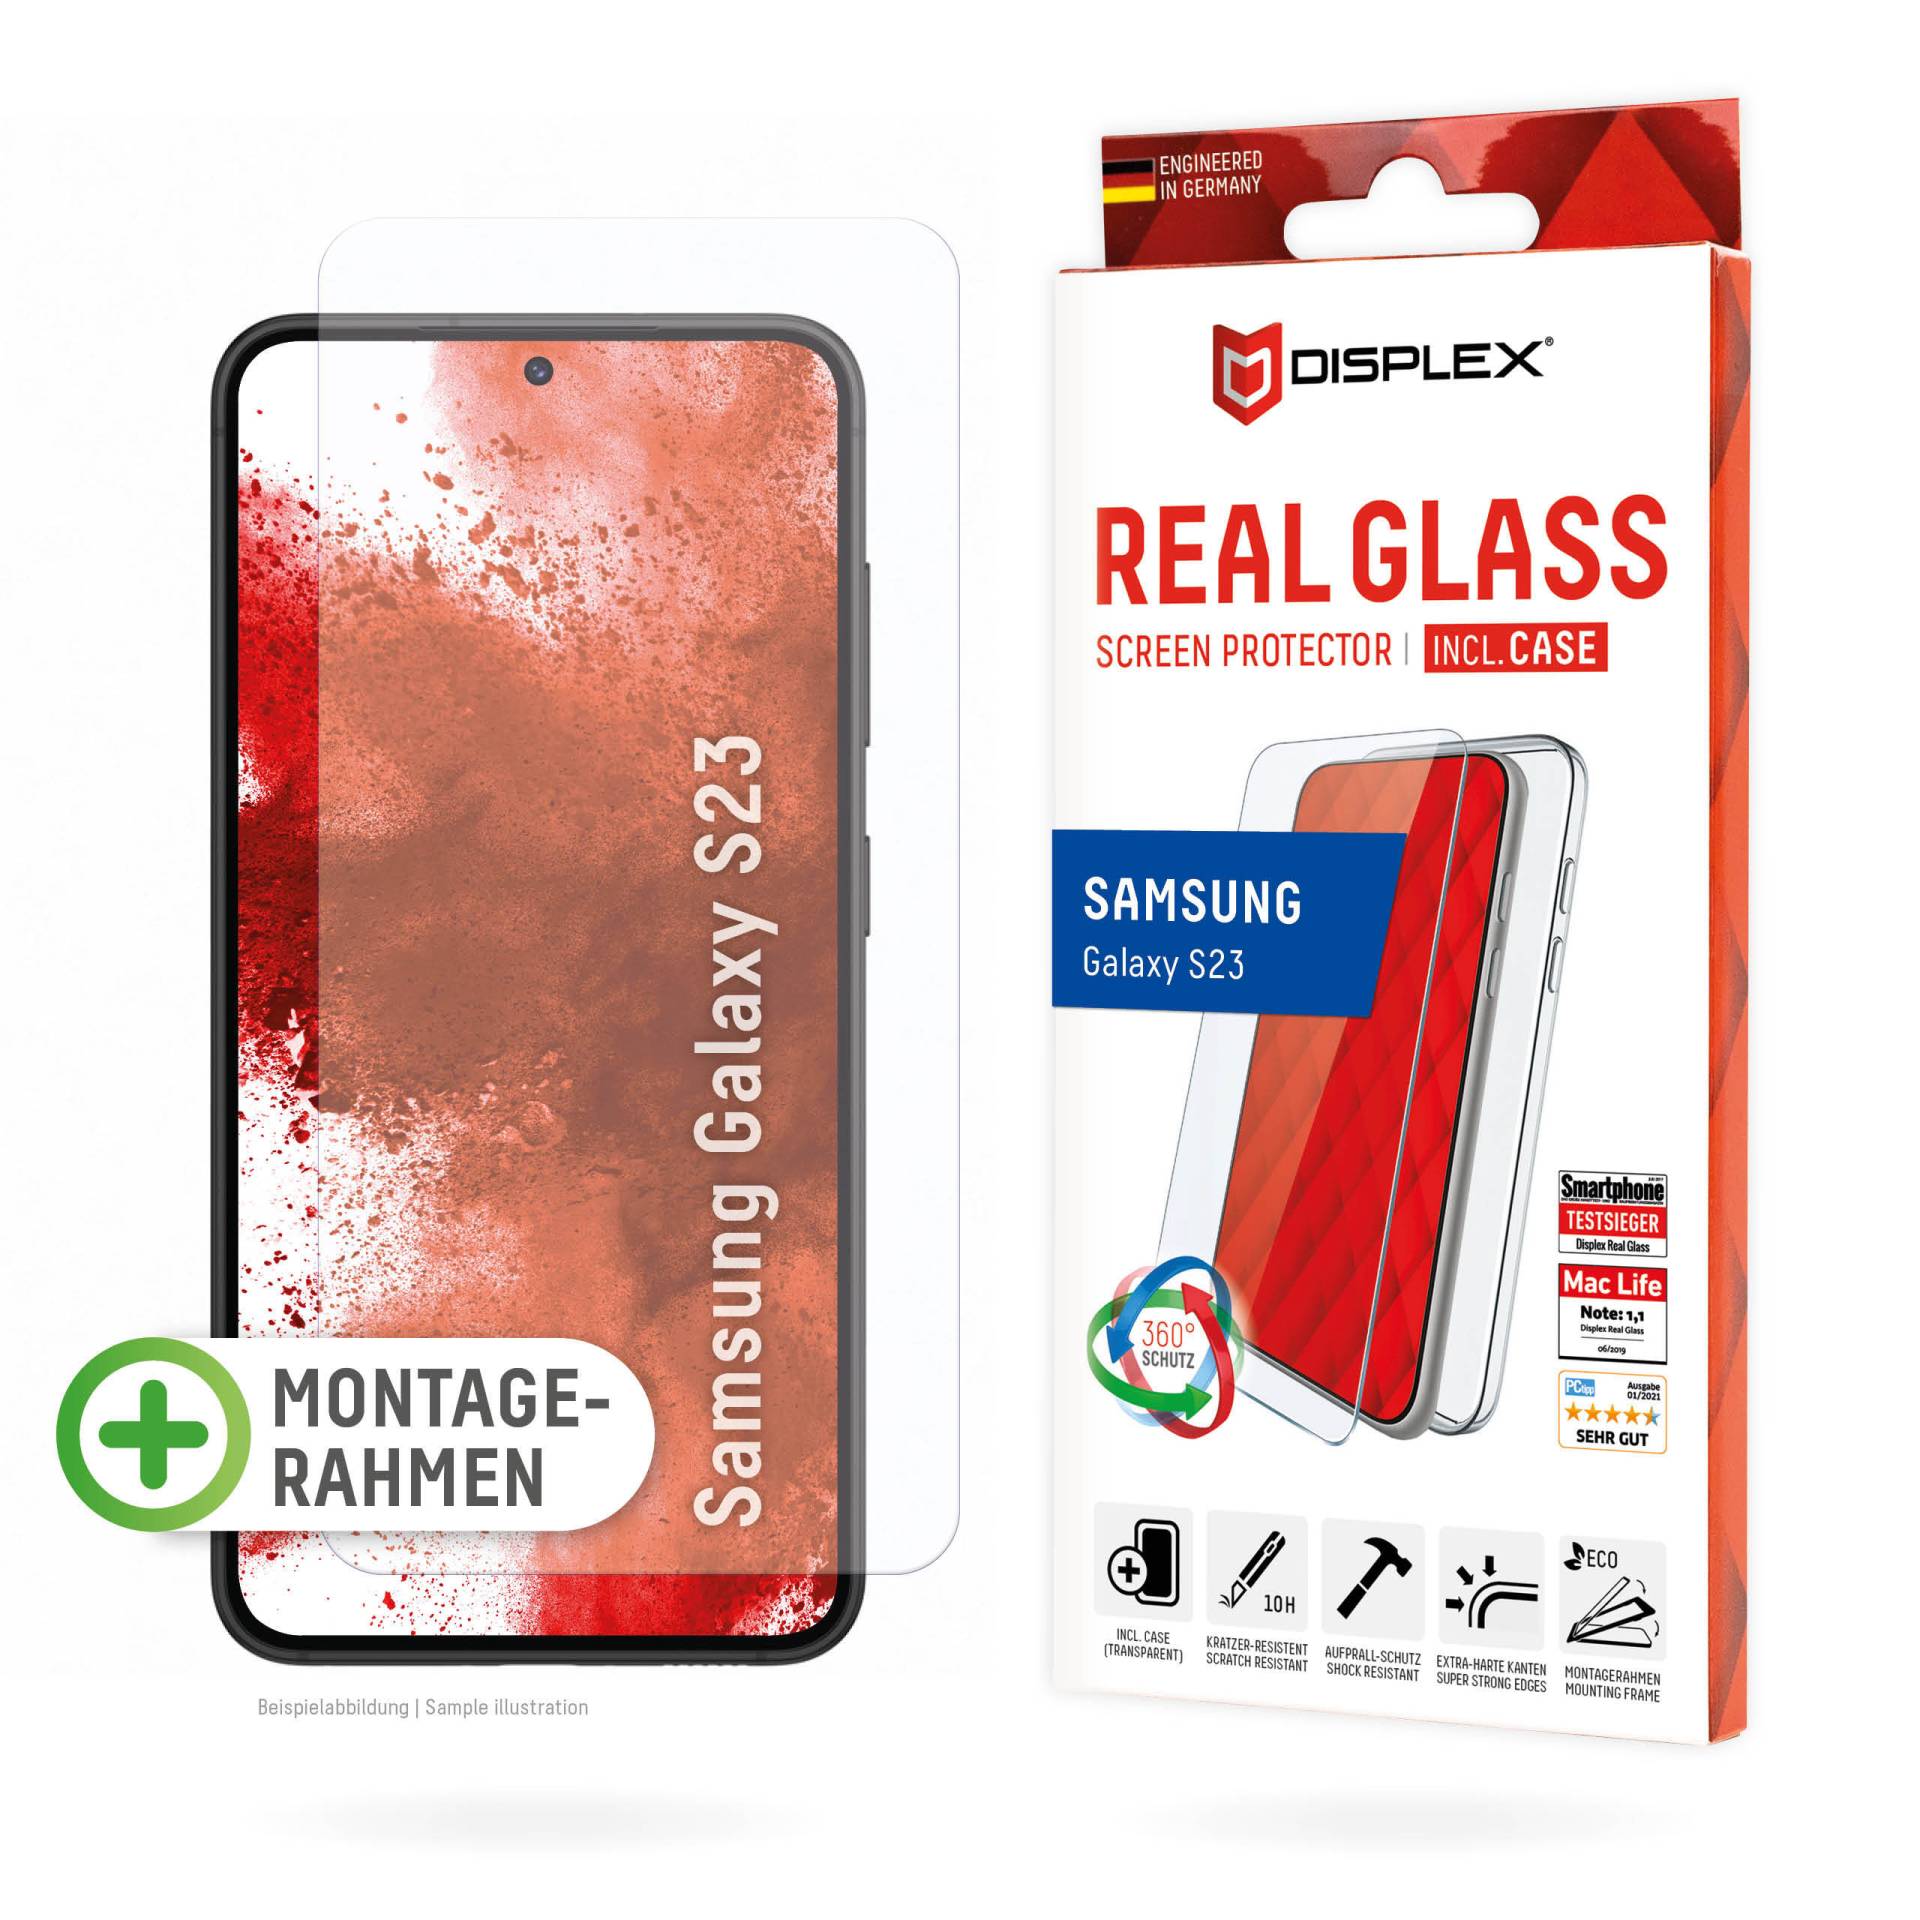 DISPLEX Panzerglas (10H) + Schutzhülle für Samsung Galaxy S23, Schutzhülle, Eco-Montagerahmen, kratzer-resistente Glasschutzfolie von Displex